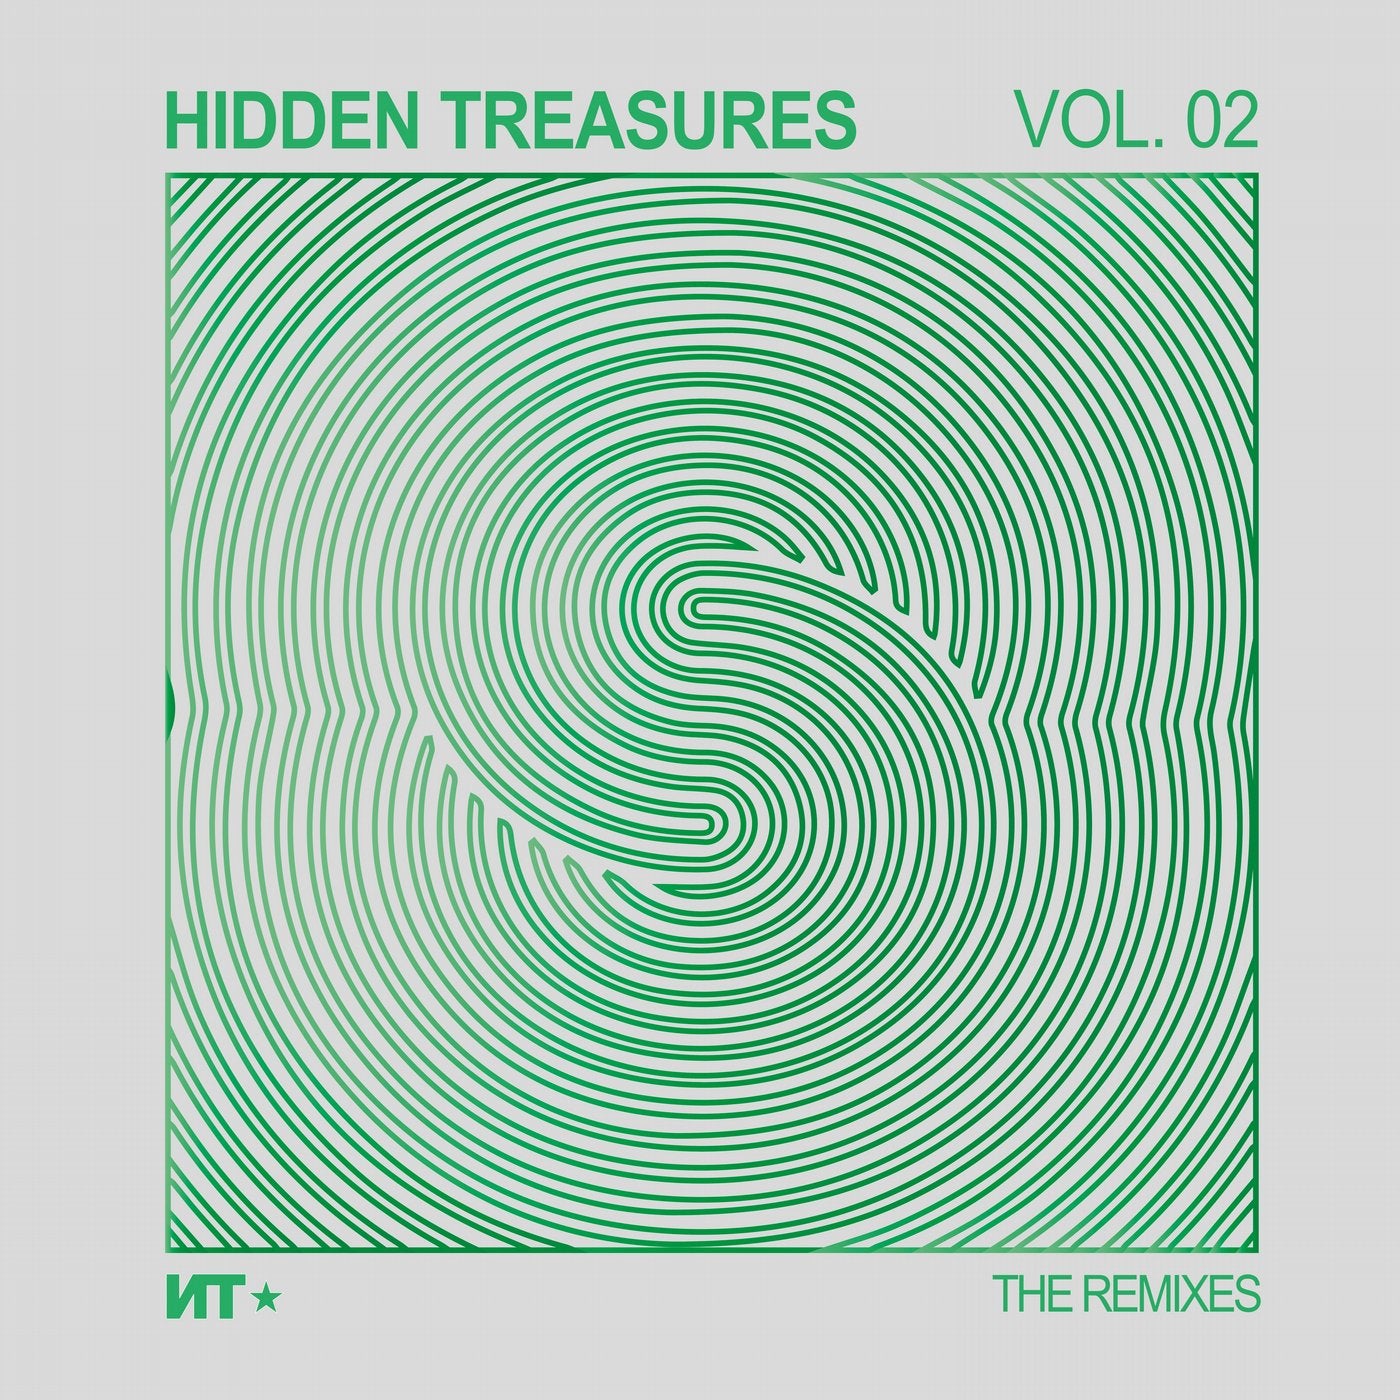 Hidden Treasures Vol 02 - The Remixes